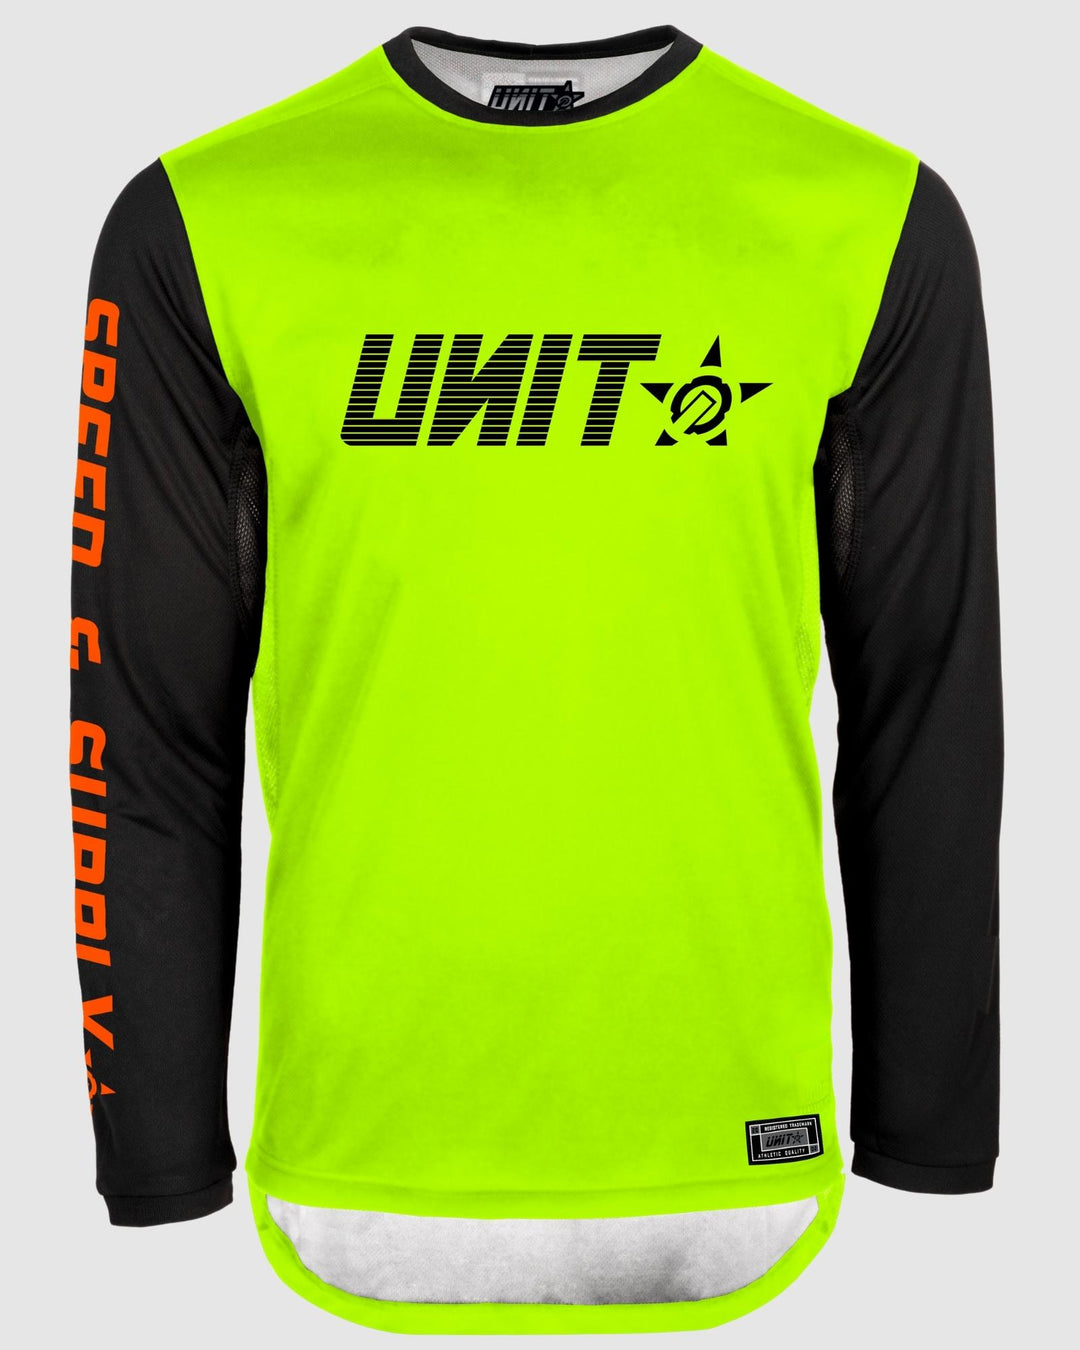 UNIT Fusion MX Jersey - Slim Fit